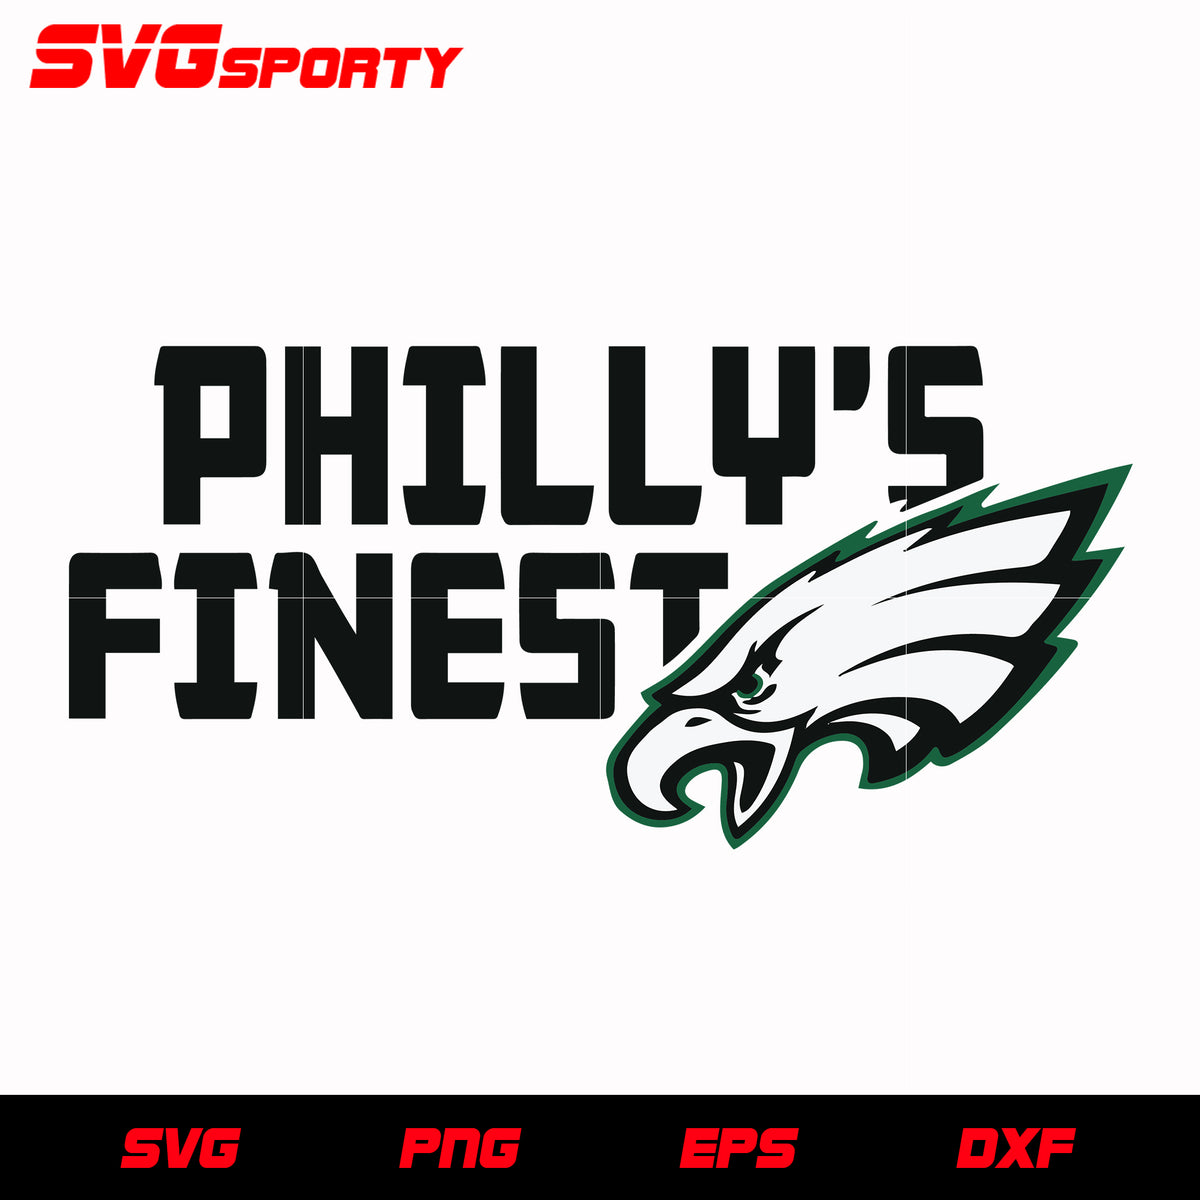 Philadelphia Eagles Live Love Eagles svg, nfl svg, eps, dxf, png, digi – SVG  Sporty